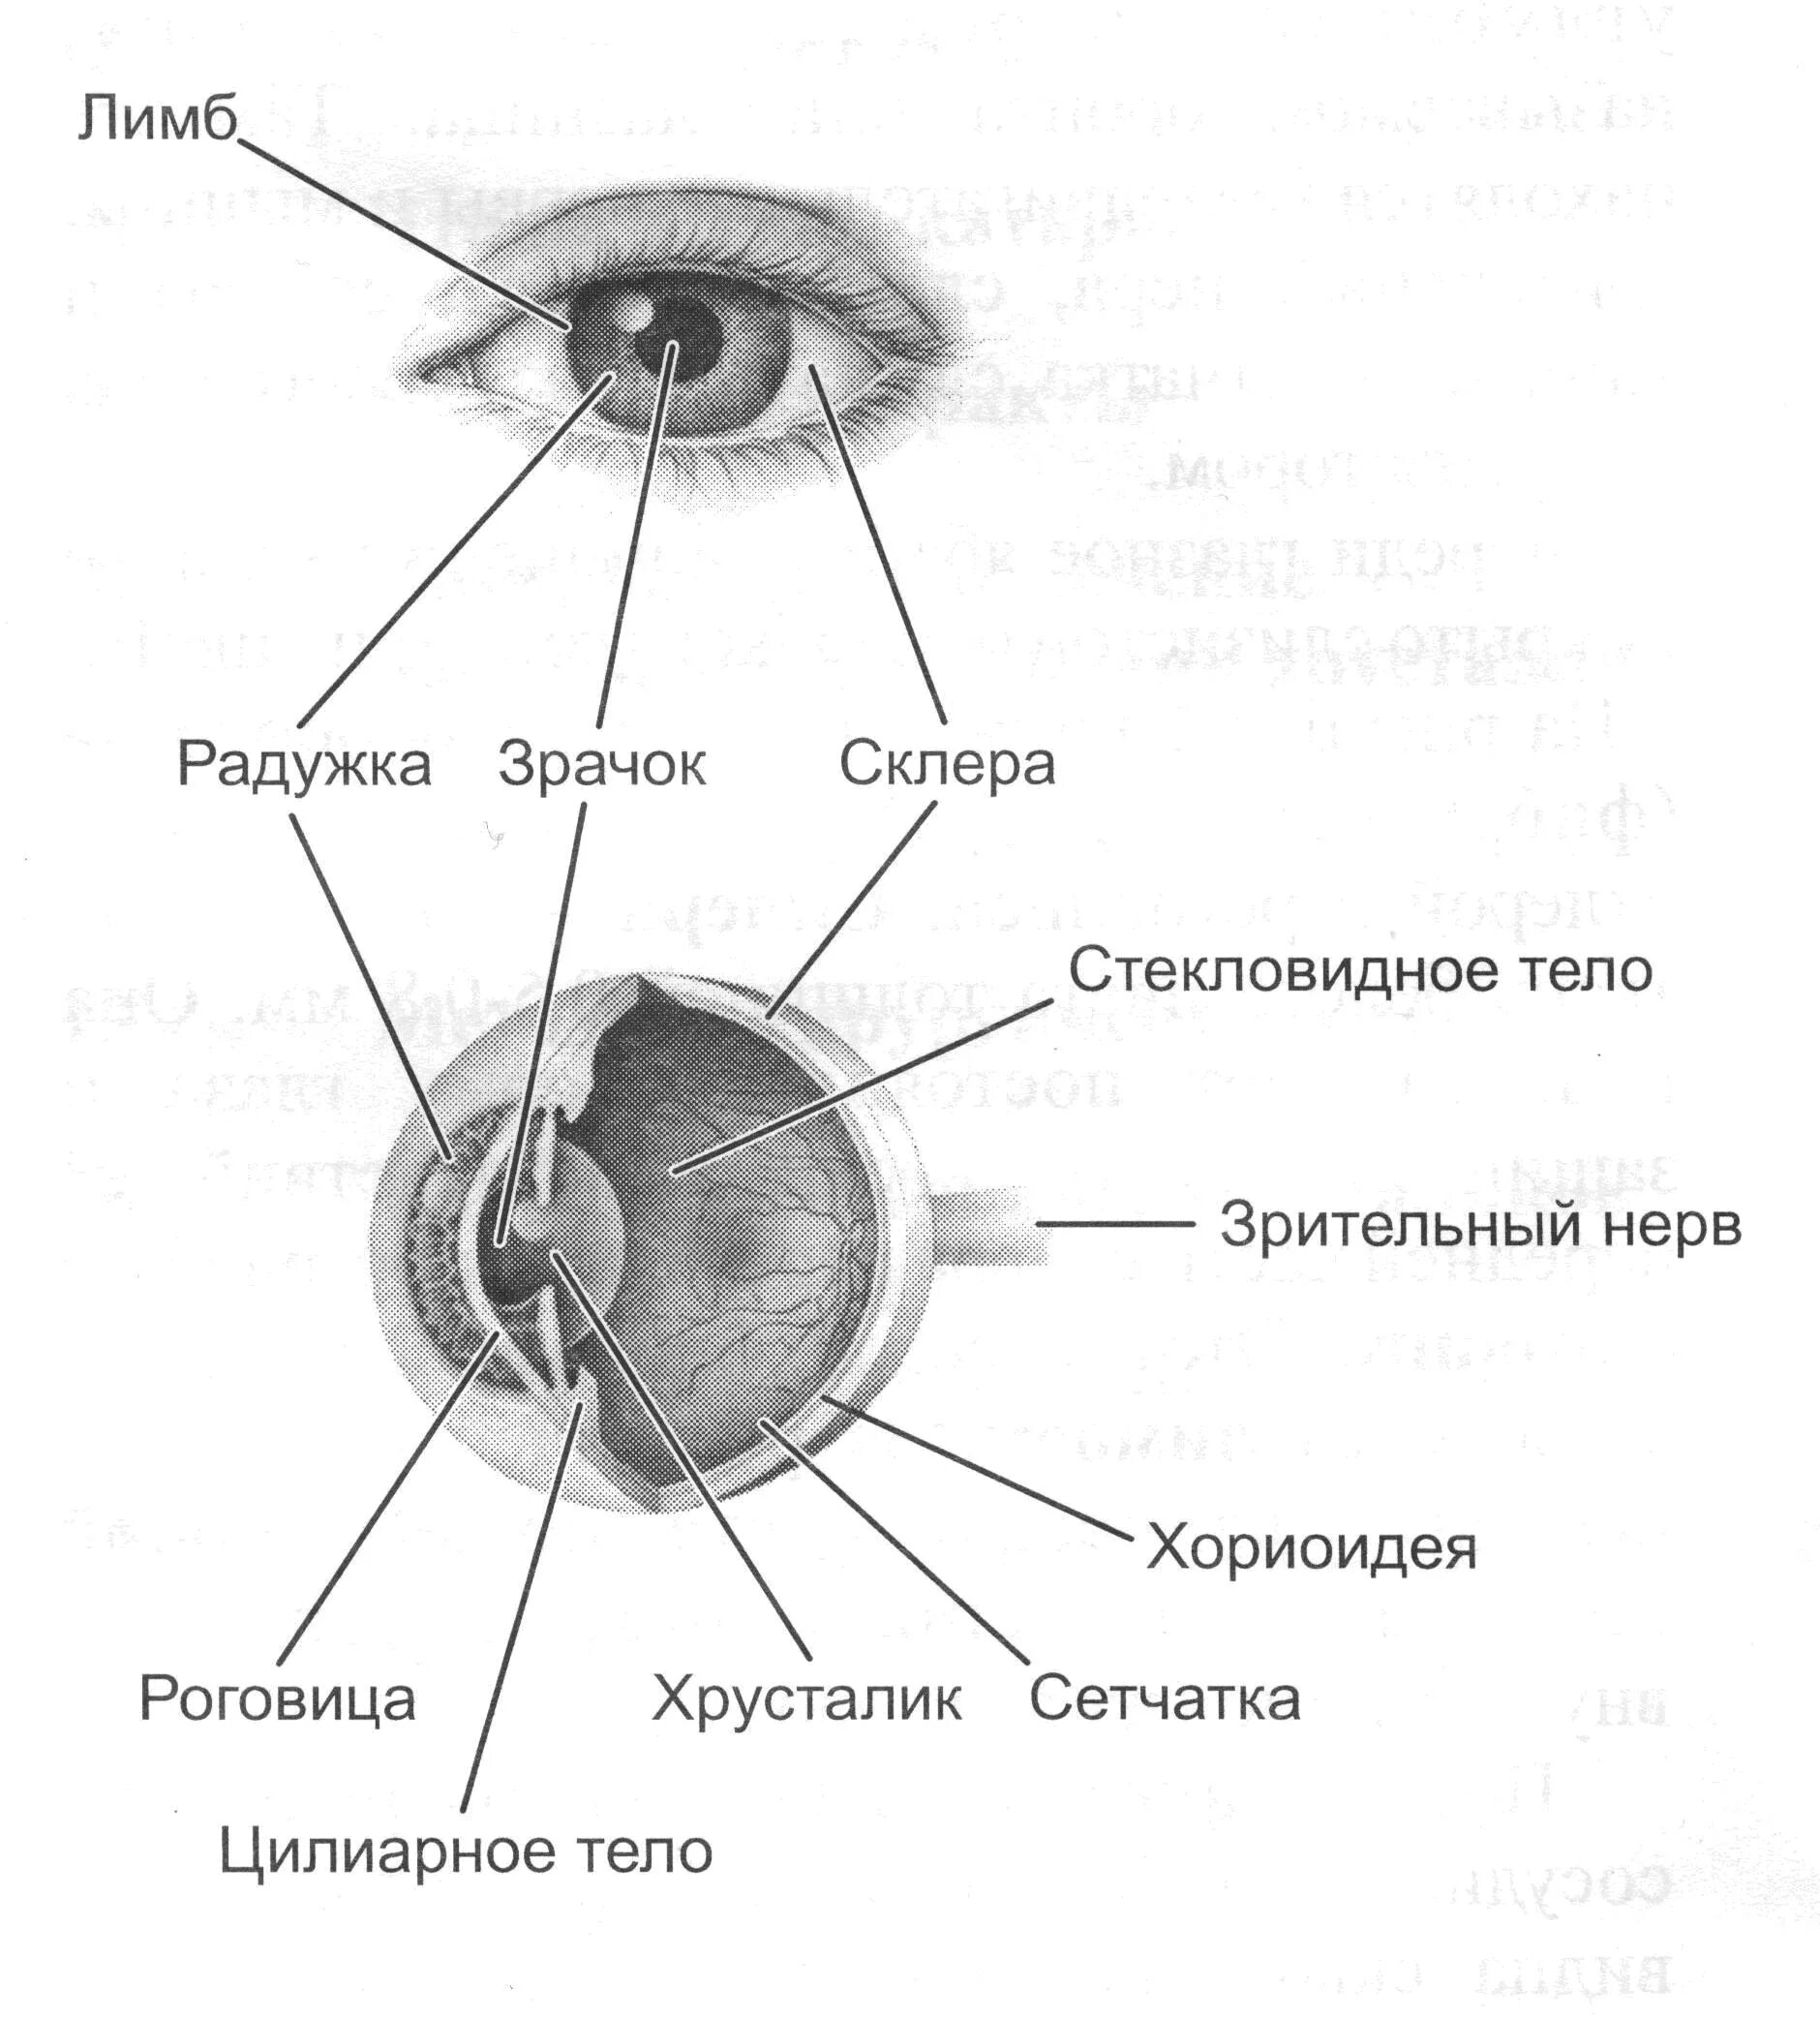 Элементы глаза. Структура глаза человека схема. Строение человеческого глаза схема. Строение глазницы с глазом анатомия. Строение глаза с подписями человека анатомия.